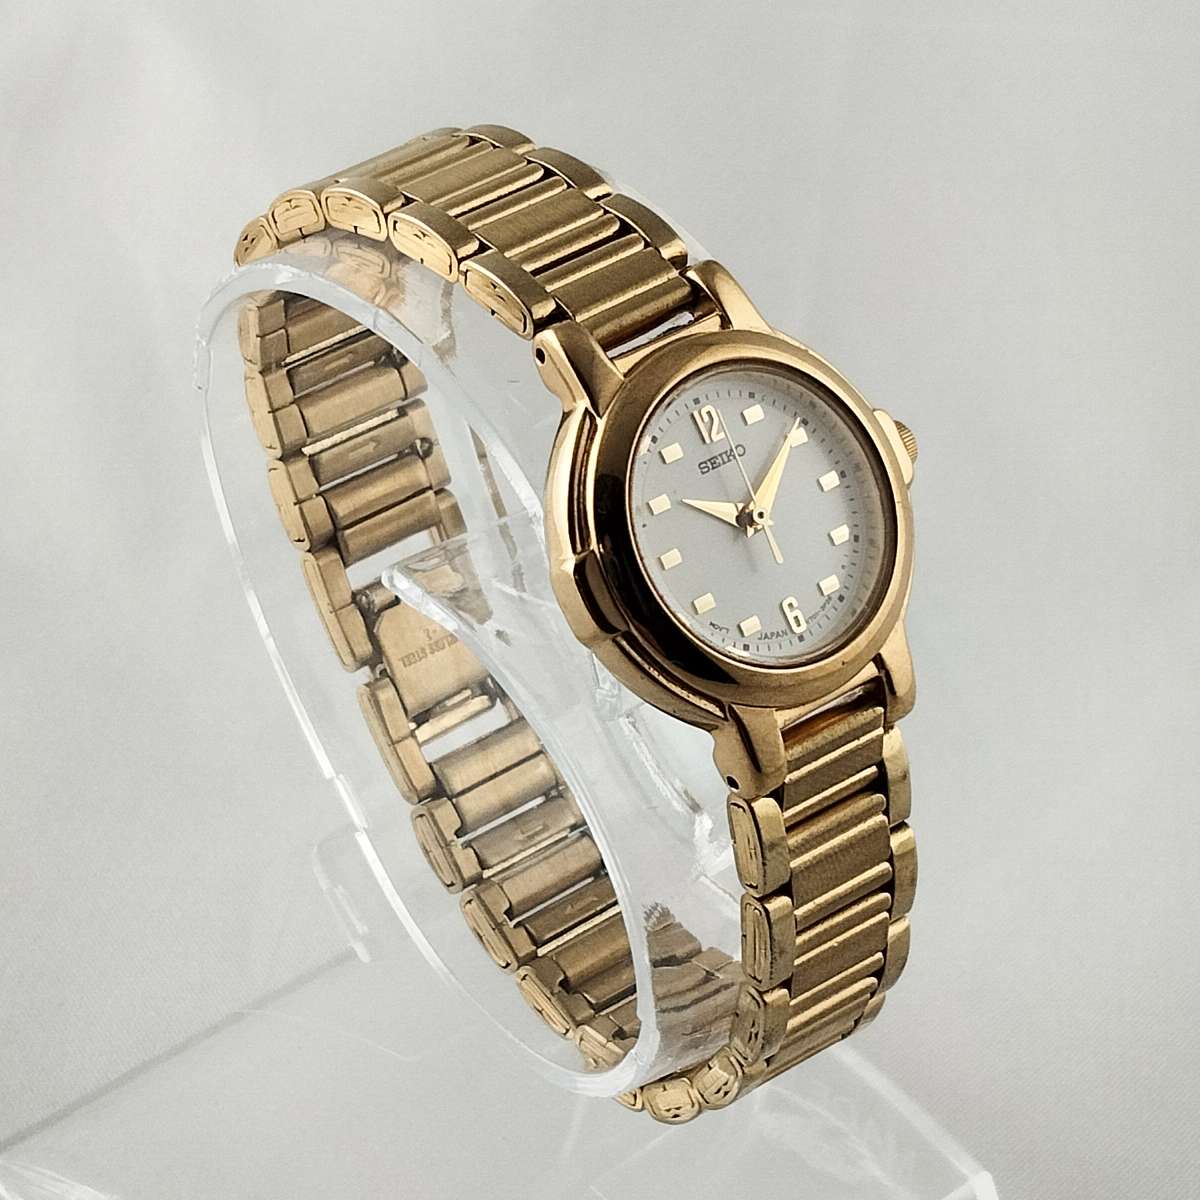 Seiko Unisex Watch, White Round Dial, Bracelet Strap